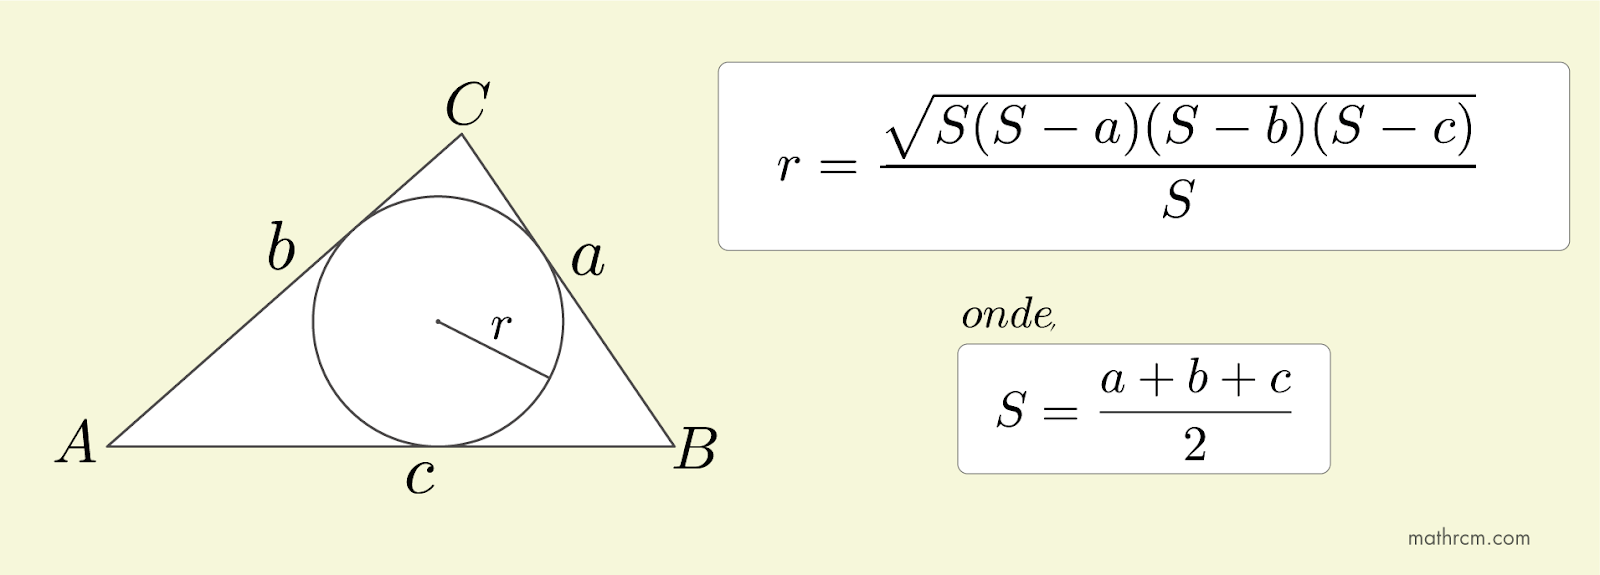 Demonstração do comprimento do raio da circunferência inscrita em um triângulo